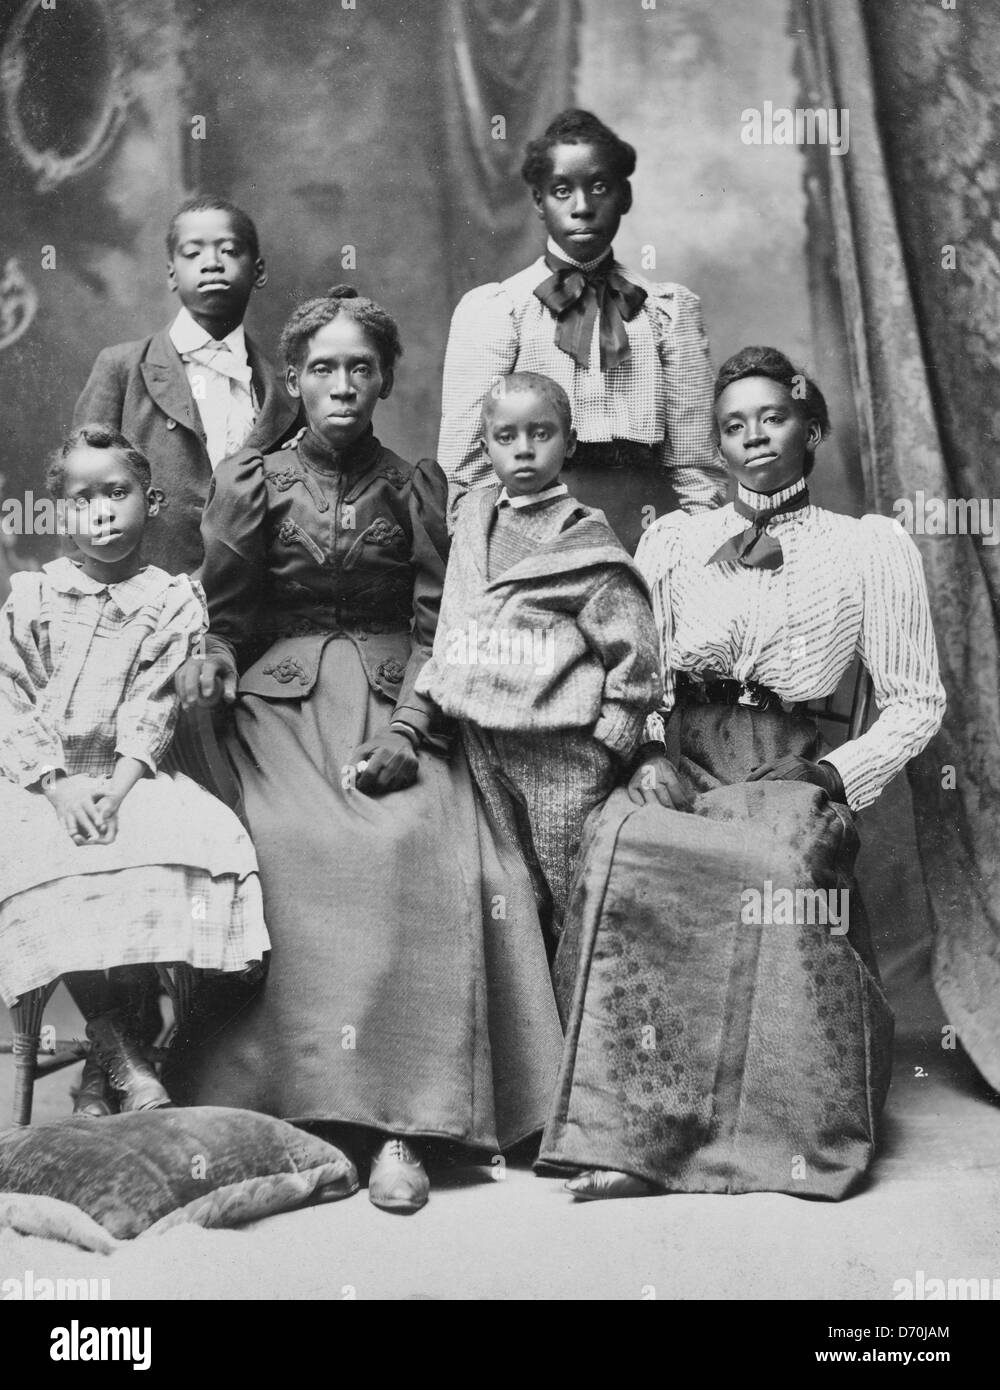 Frau Frazer Baker und Kinder Familie des ermordeten Postmeister in Lake City, South Carolina - Lavinia Baker und ihre fünf Überlebende Kinder nach dem Lynchen von ihrem Mann und Ihrem Baby am 22. Februar 1898. Stockfoto